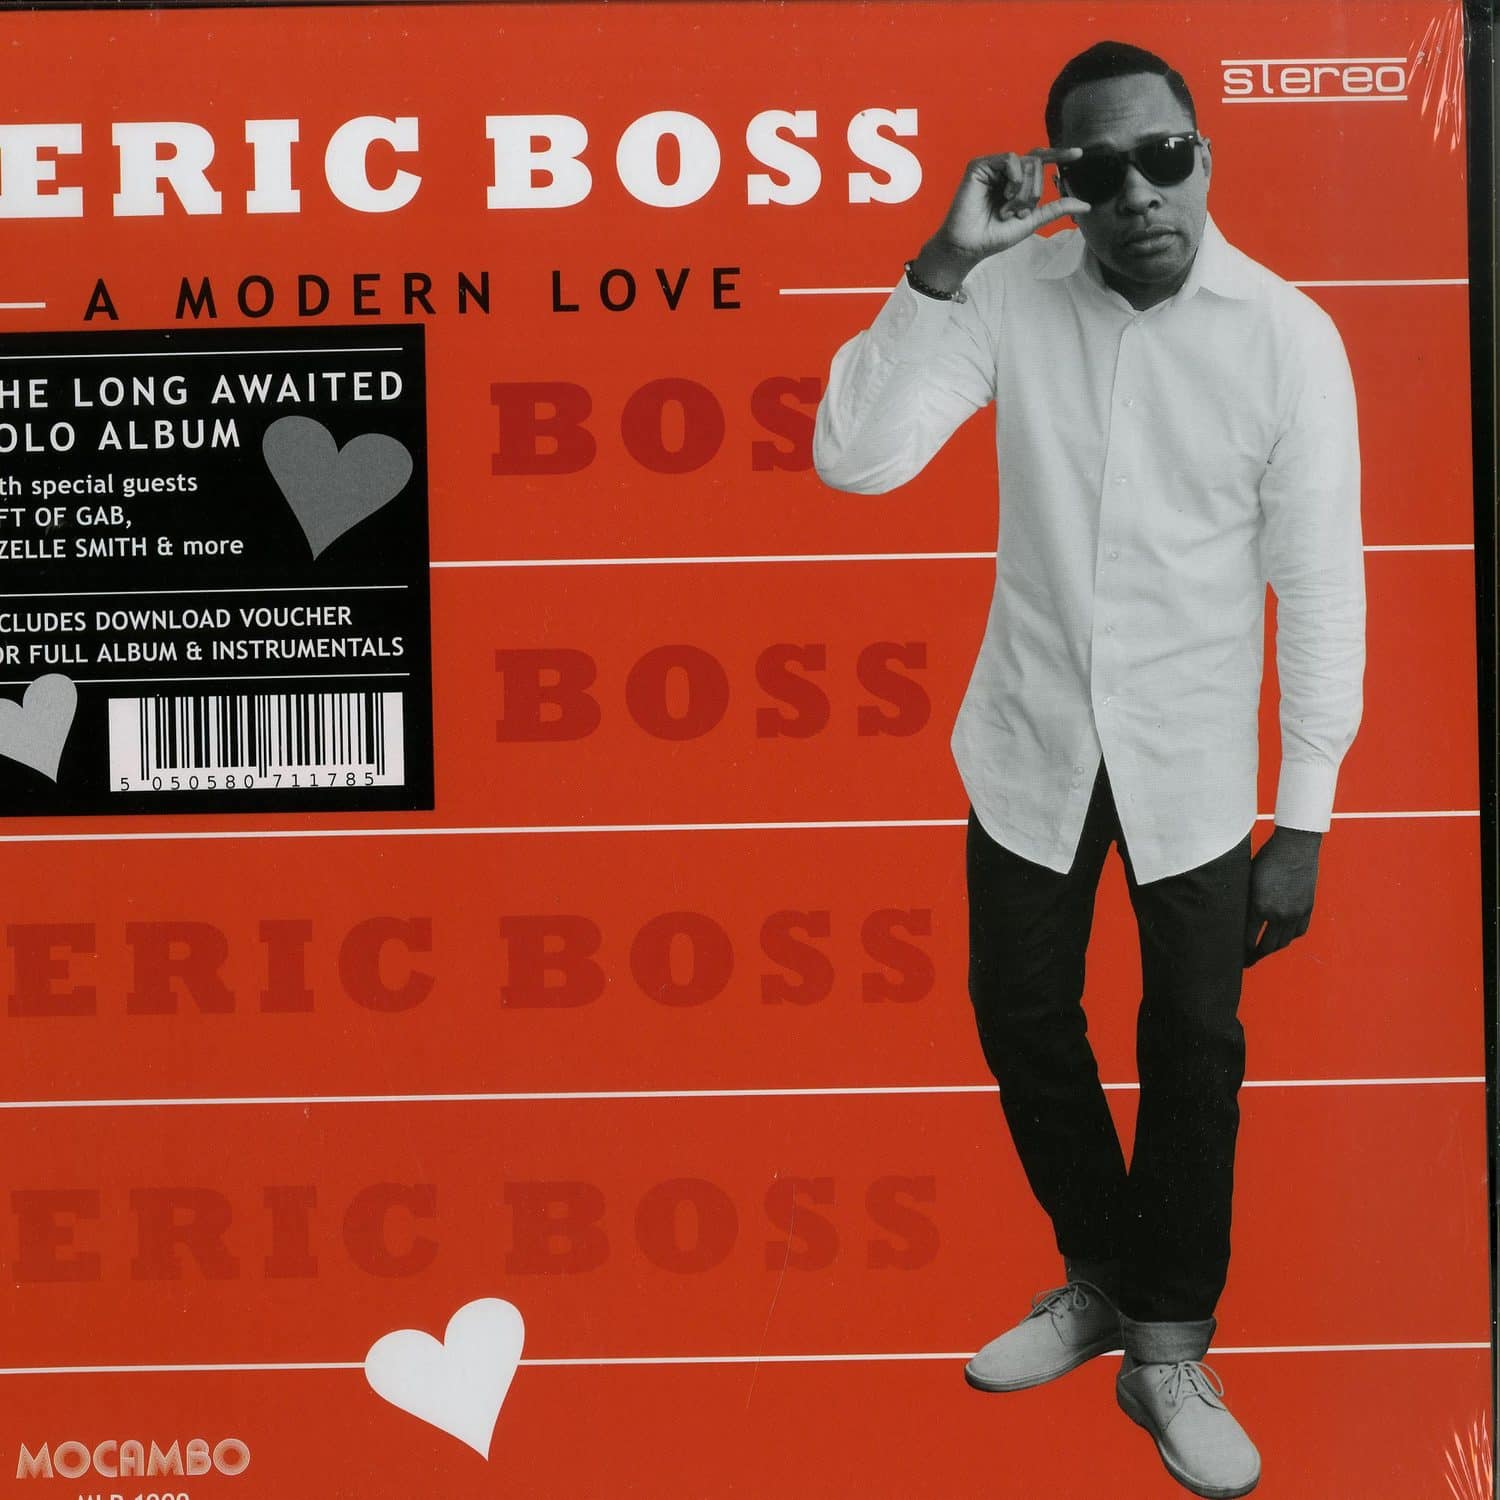 Eric Boss - A MODERN LOVE 